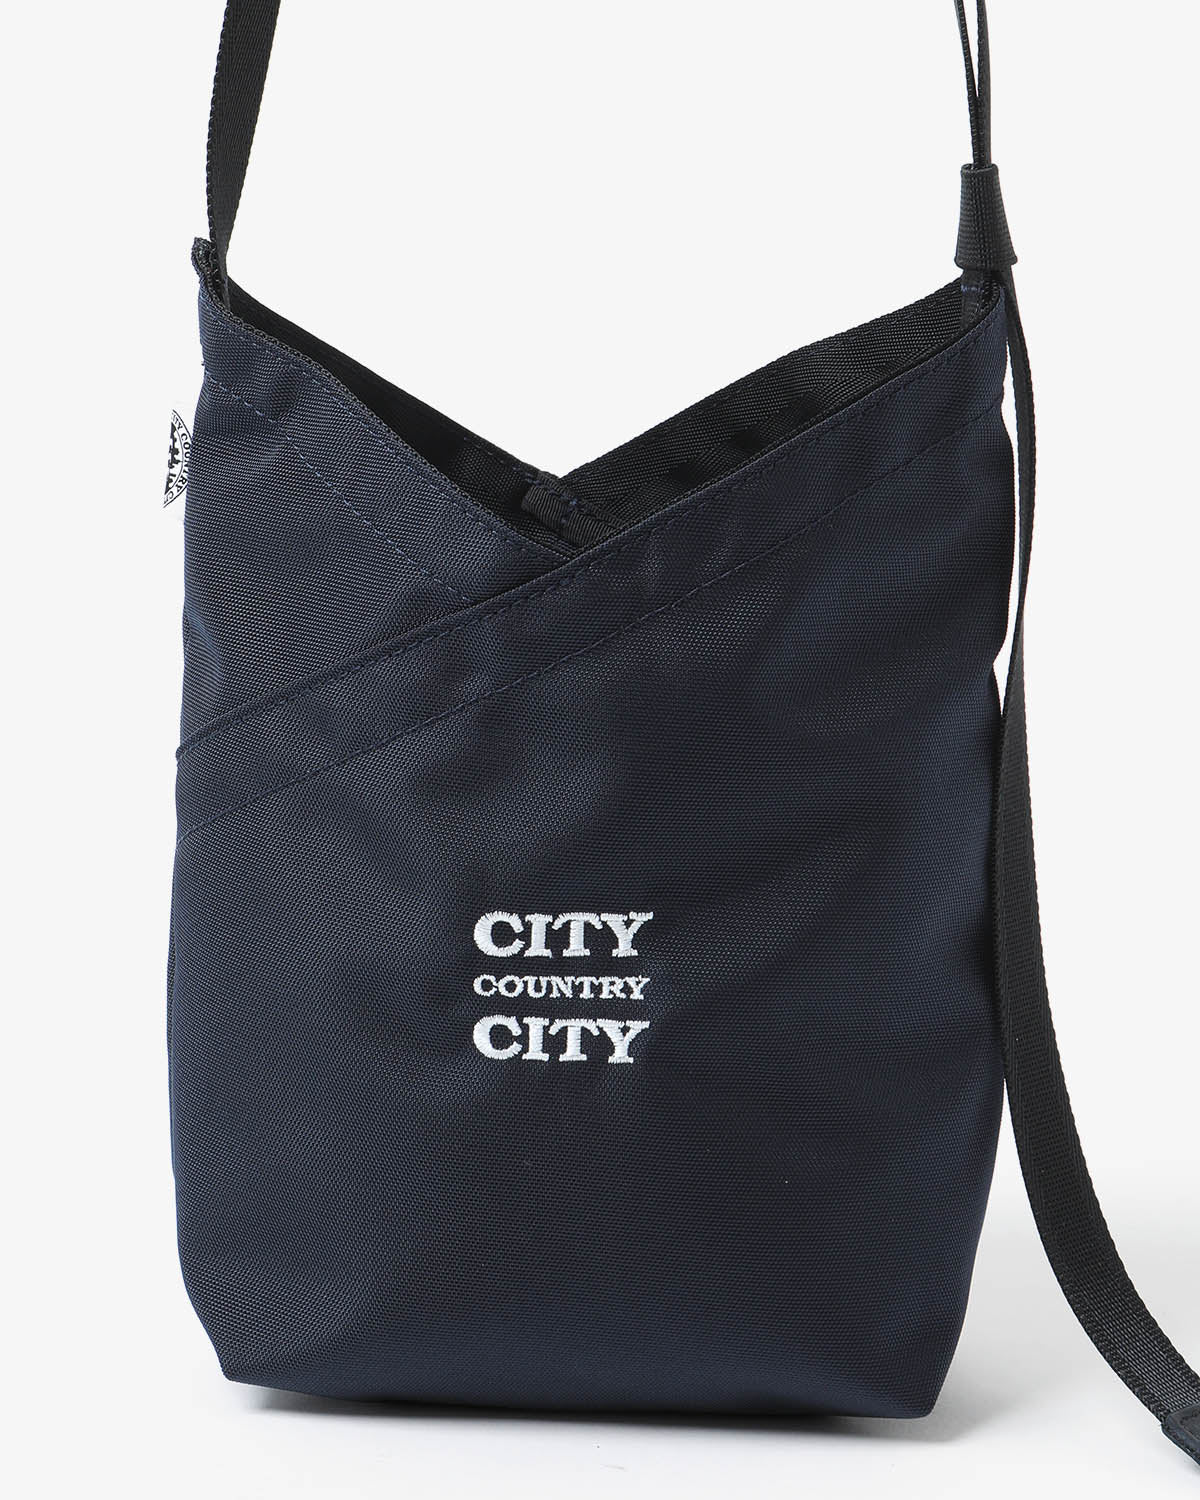 AZUMA SHOULDER BAG NYLON OXFORD for CITY COUNTRY CITY